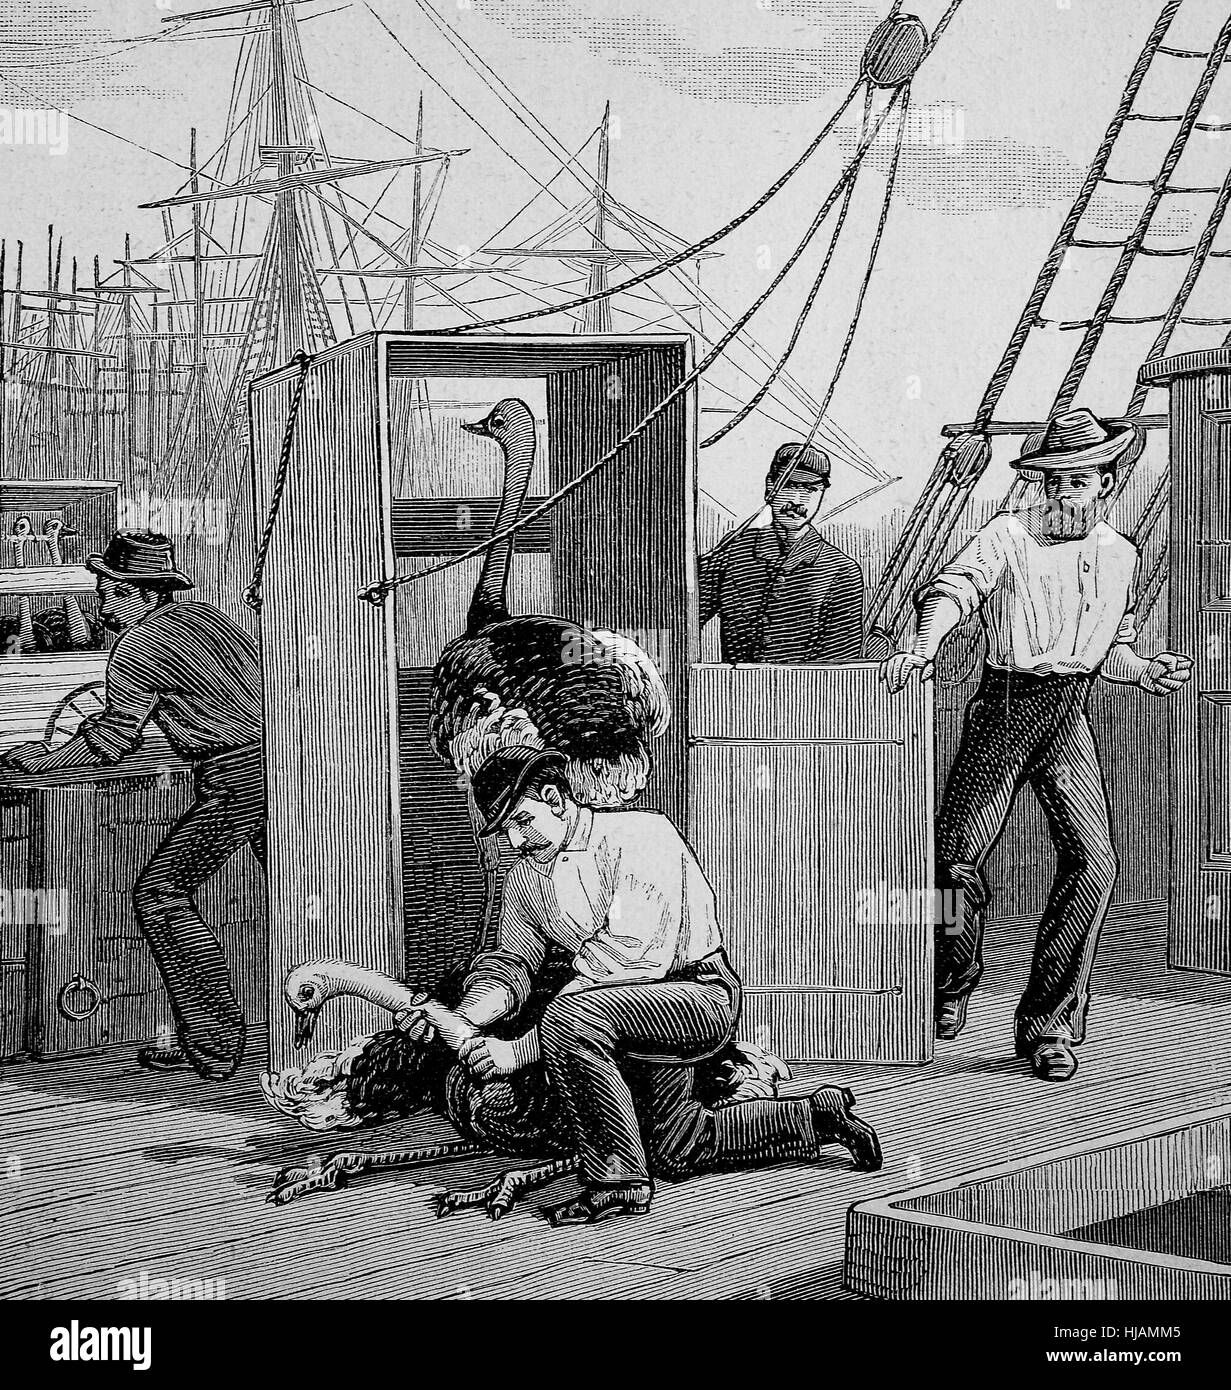 der Transport von Strauß Vögel aus Südafrika nach Australien mit einem Schiff, ist ein entflohener Vogel Strauß zurückeroberten, historische Bild oder Illustration aus dem Jahr 1894, digital verbessert Stockfoto